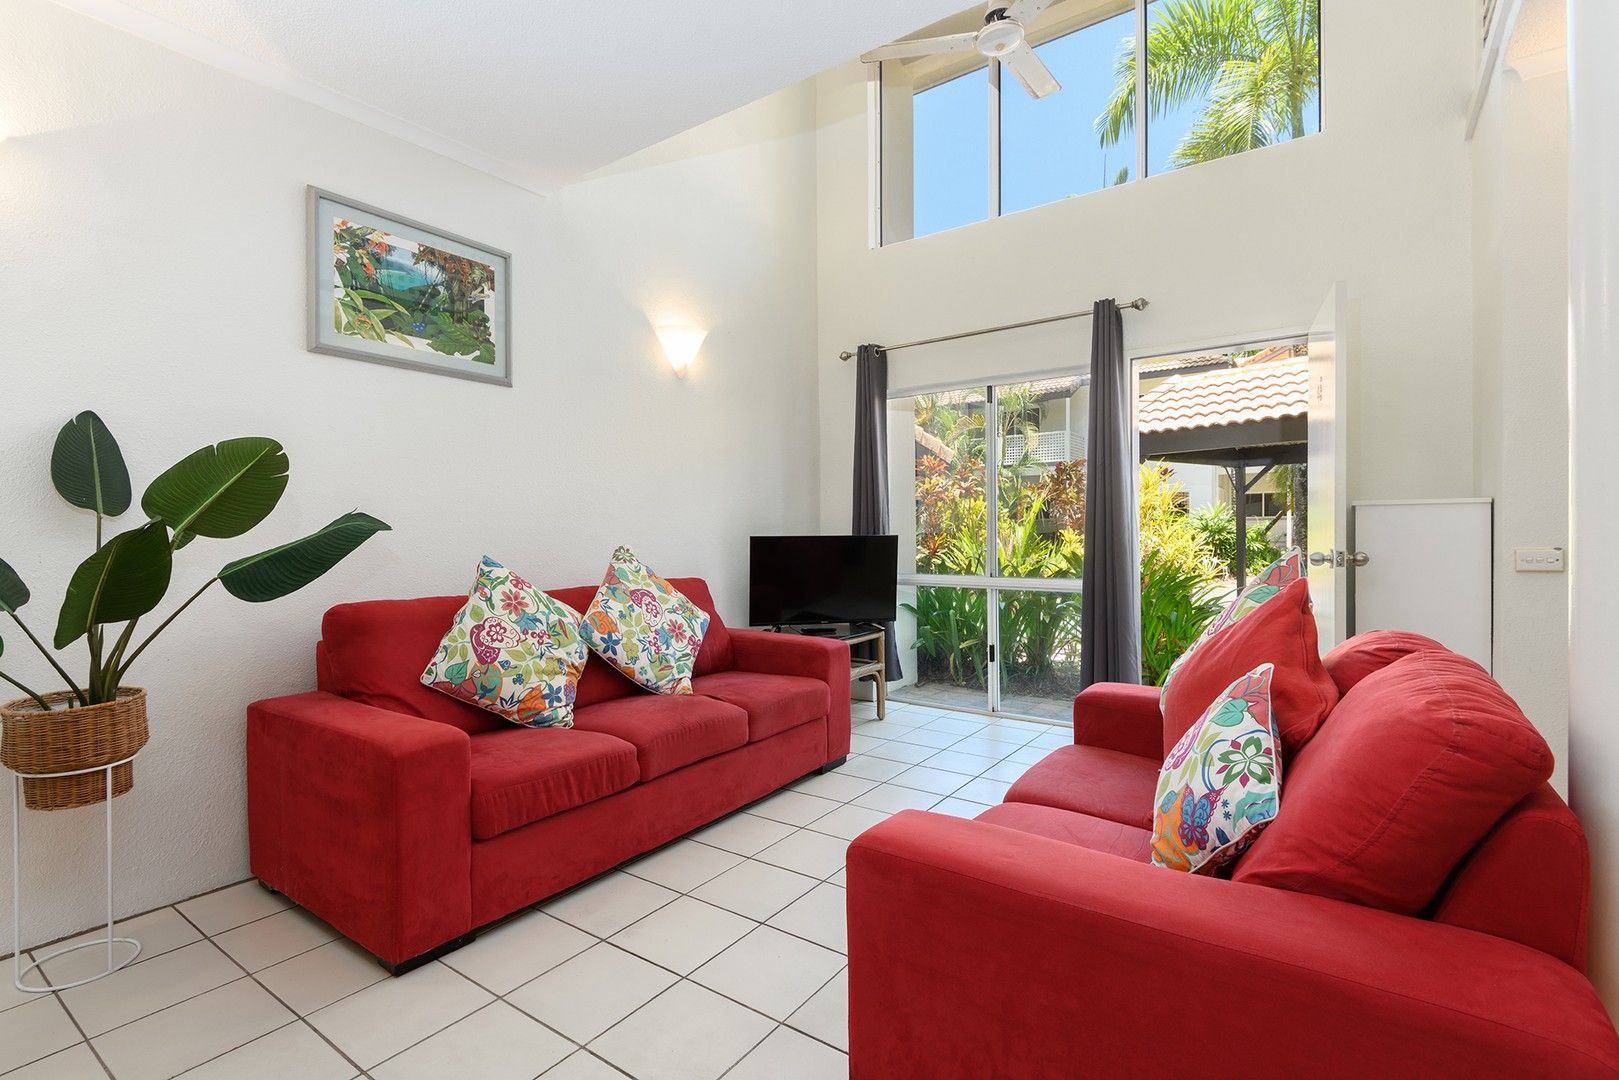 2 bedrooms Apartment / Unit / Flat in 48/121-137 Port Douglas Road PORT DOUGLAS QLD, 4877